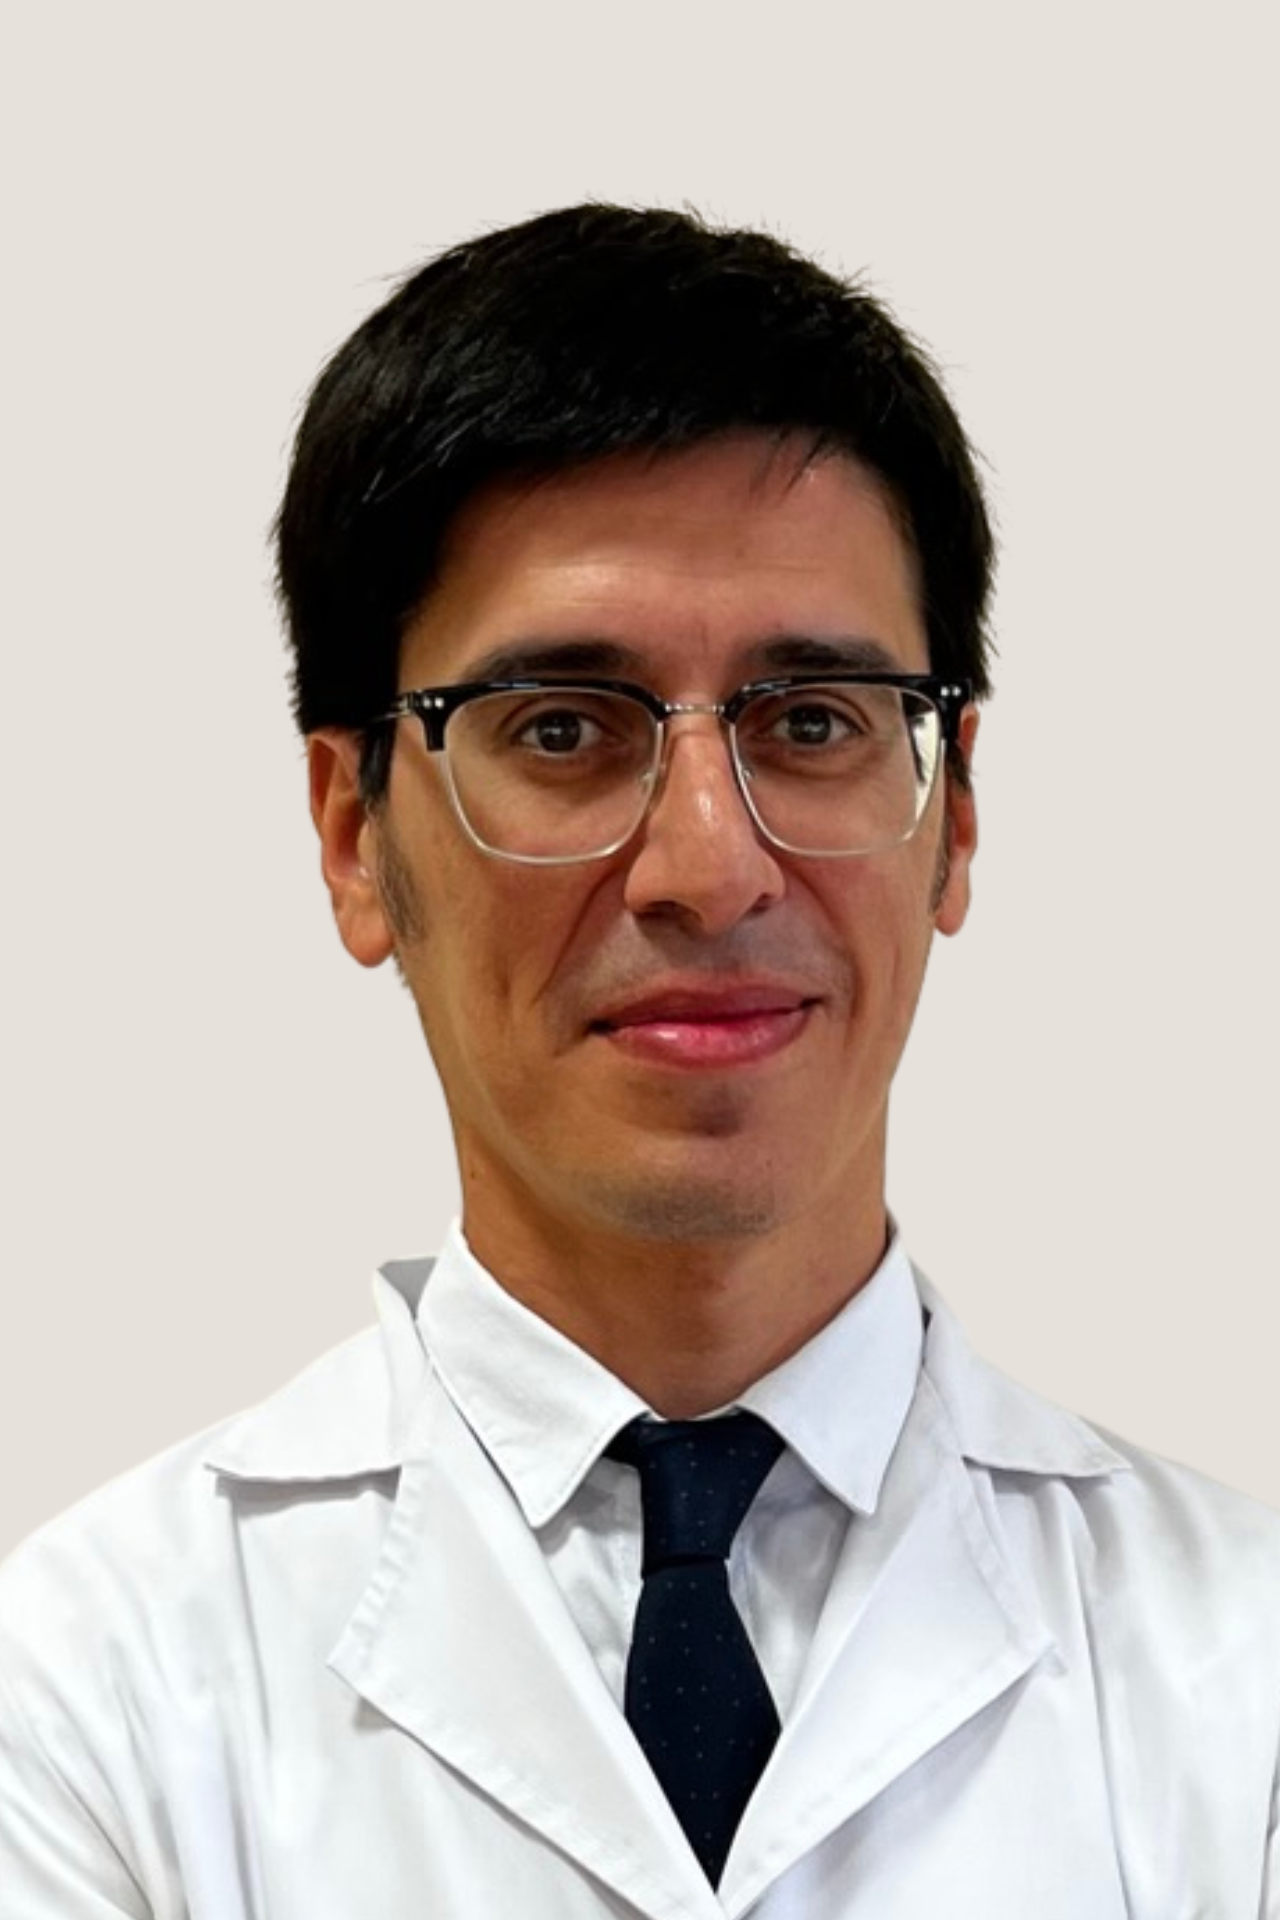 Dr. Monzón, Juan Ricardo